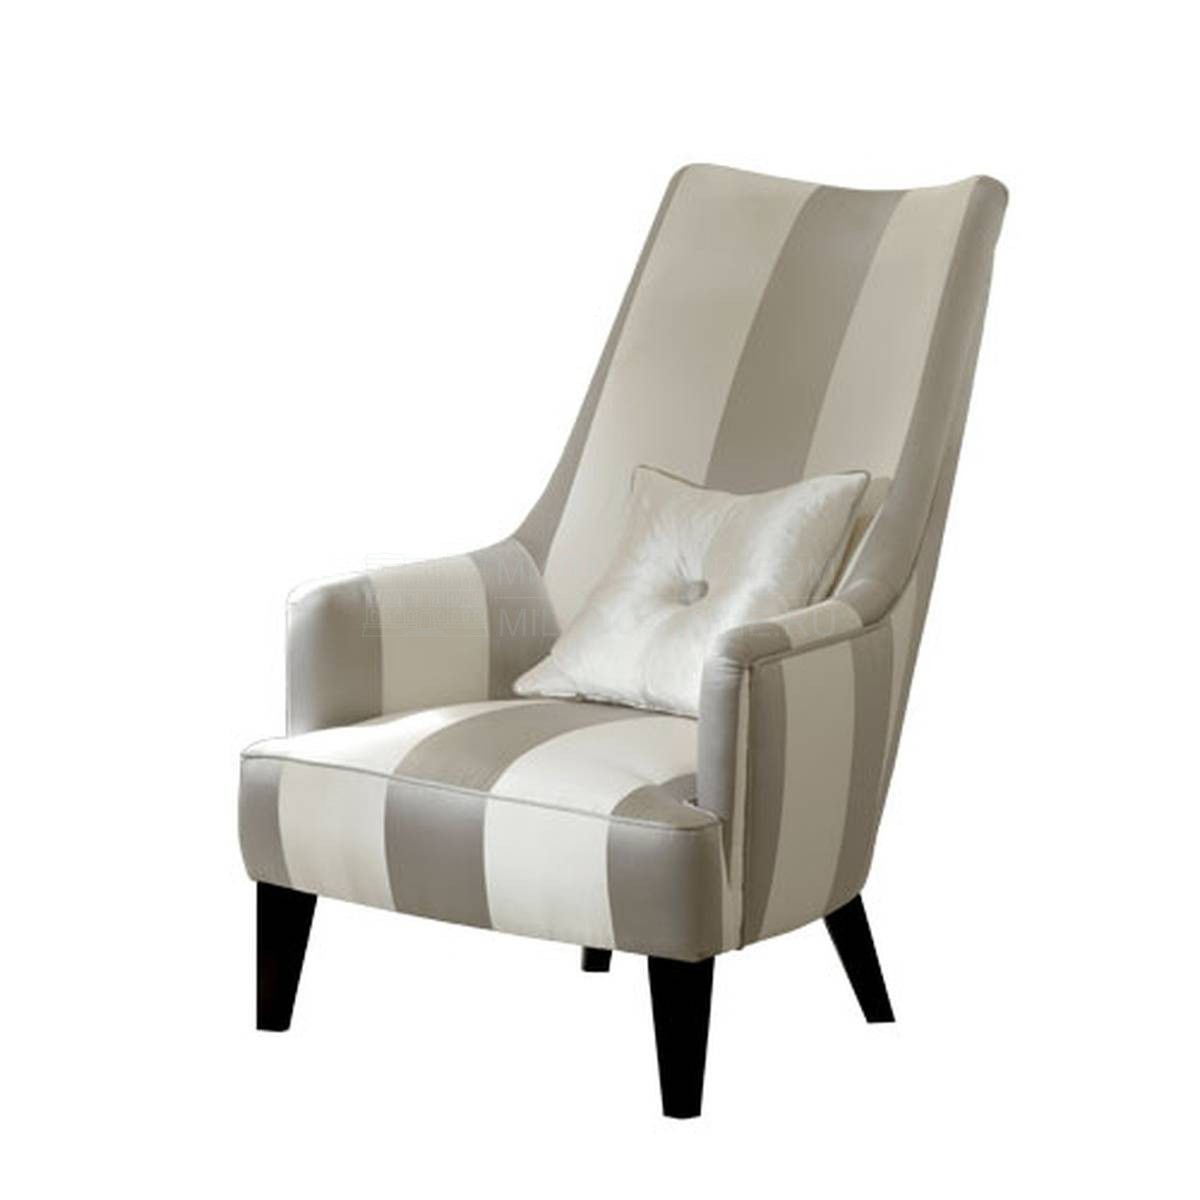 Кресло Penelope/ armchair из Италии фабрики SOFTHOUSE